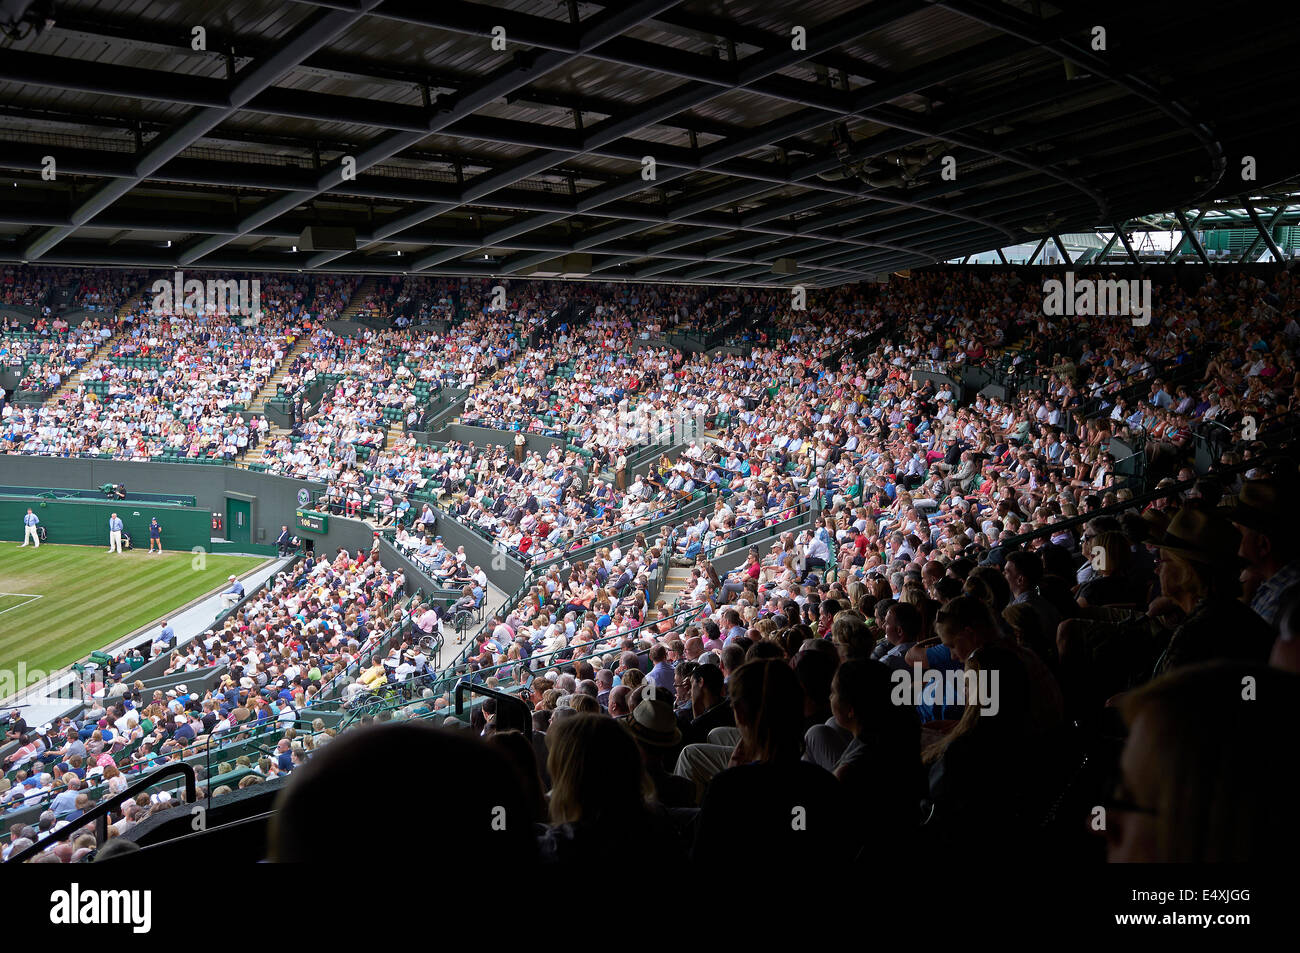 Championnat de Tennis de Wimbledon 2014, foule regardant mens 1/4 de finale, aucune cour 1 Banque D'Images